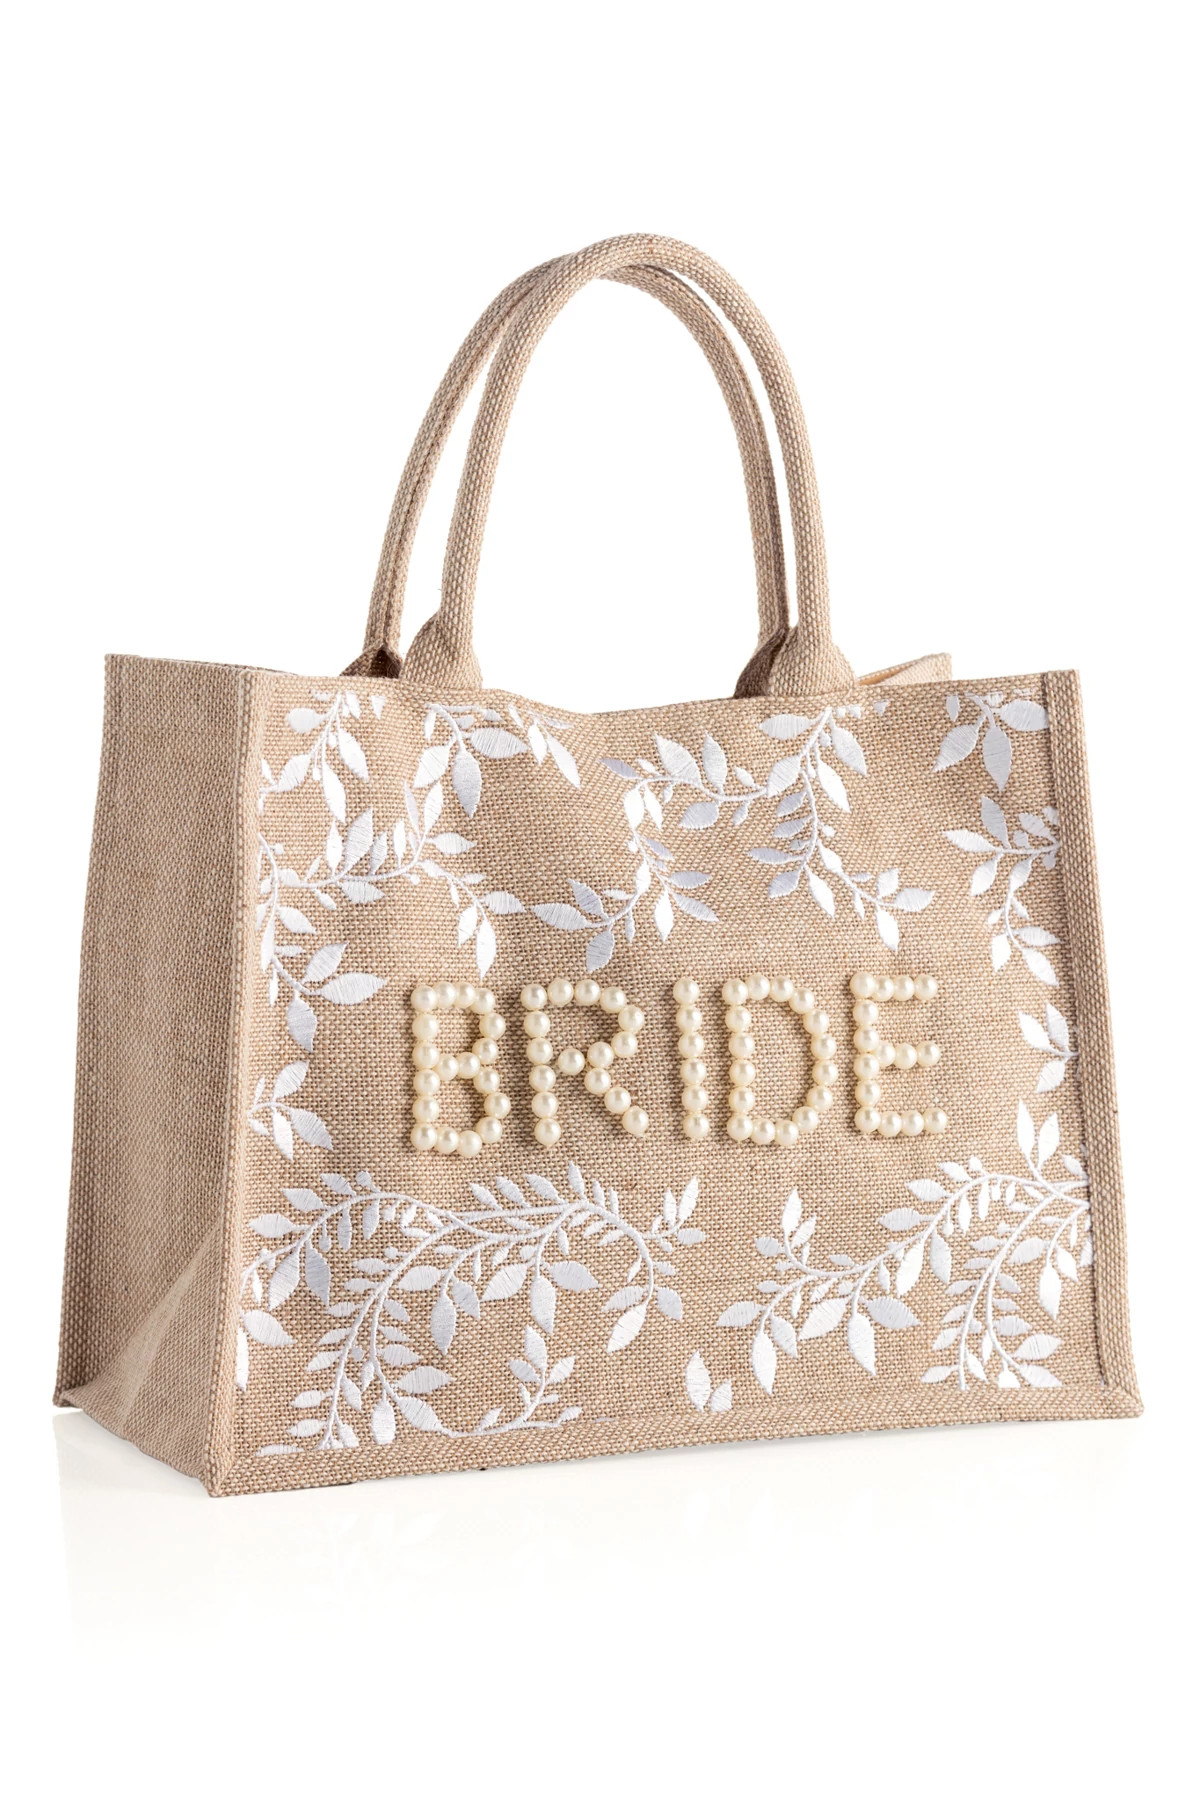 NATURAL Bride Tote Bag image number 1